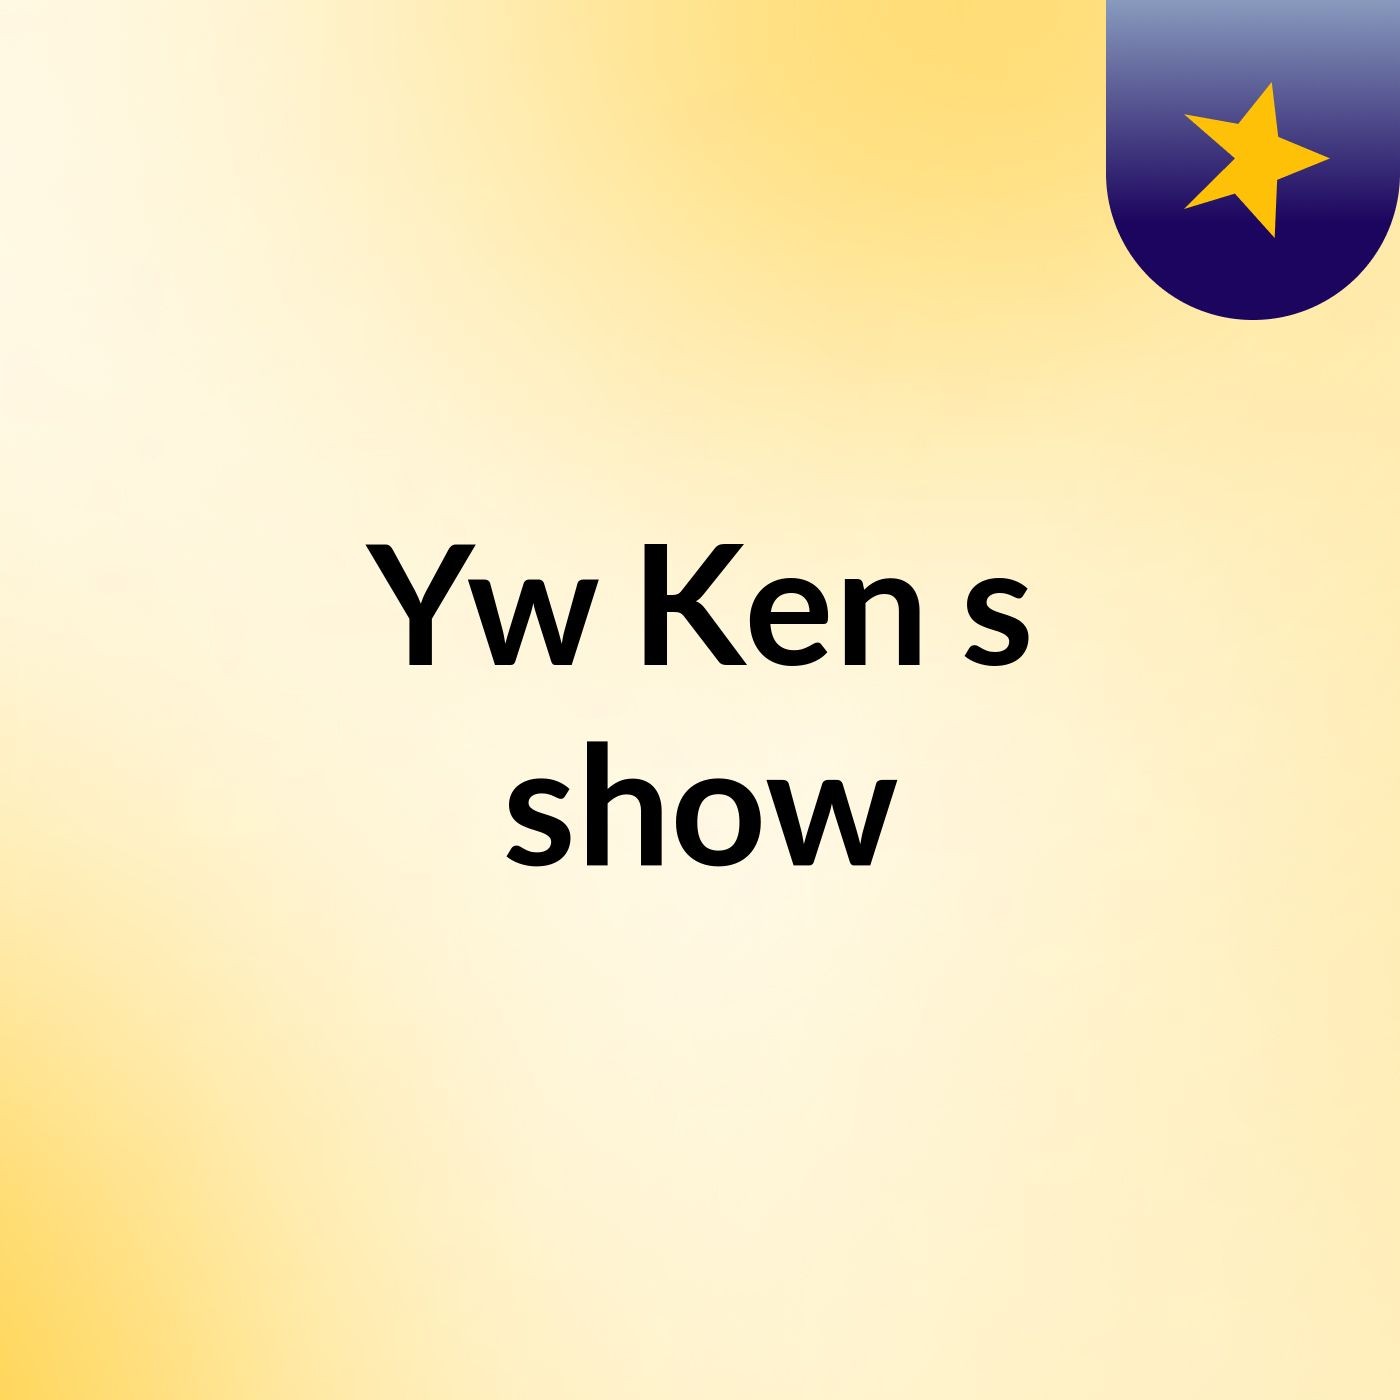 Yw Ken's show